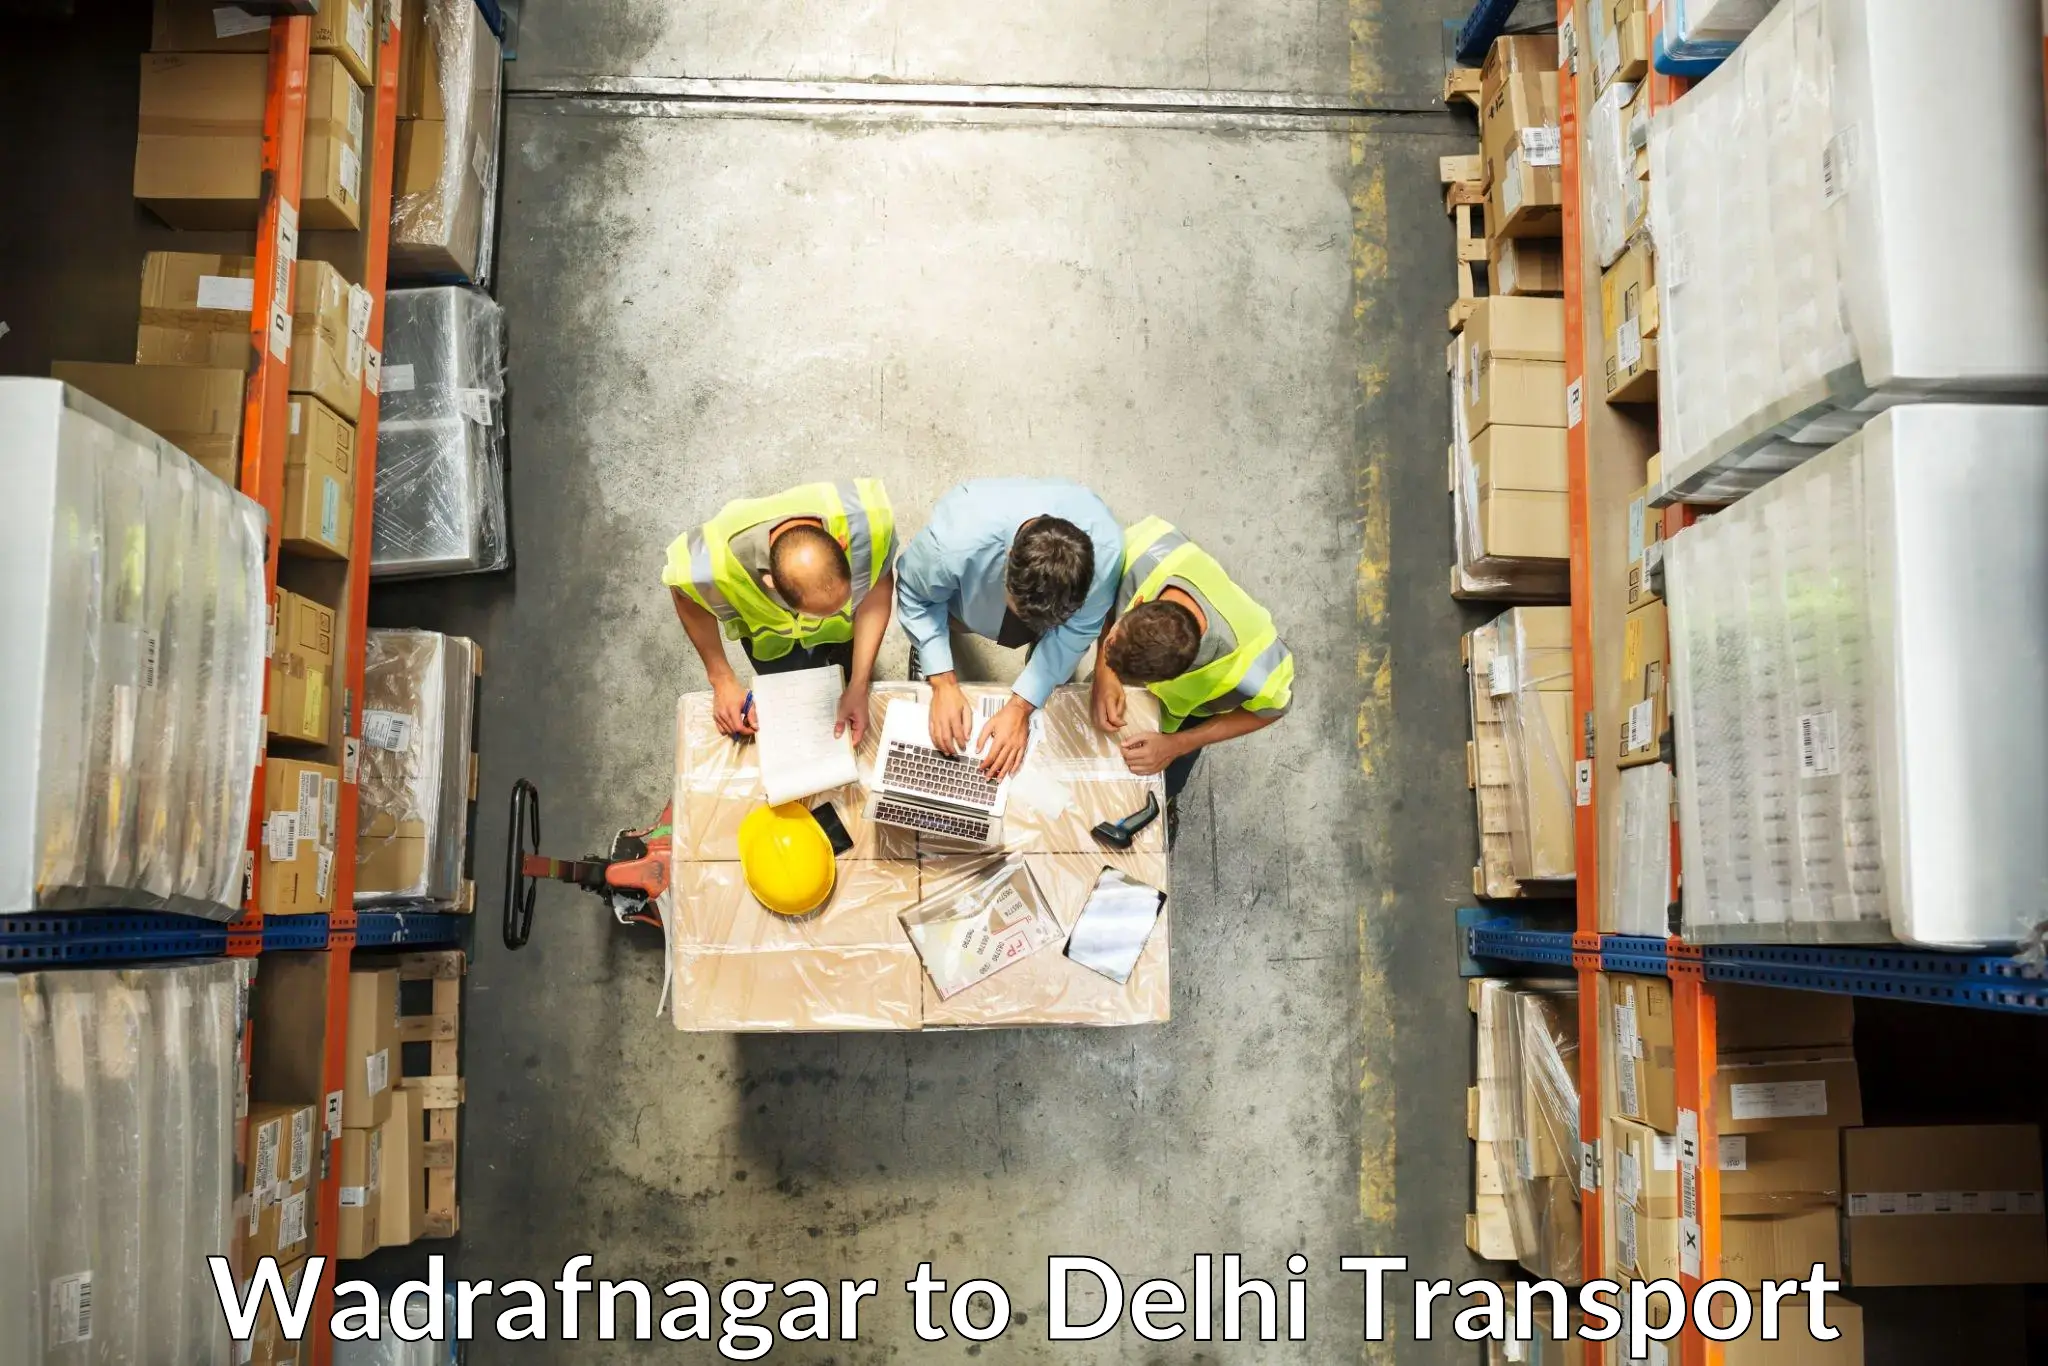 Vehicle transport services Wadrafnagar to IIT Delhi